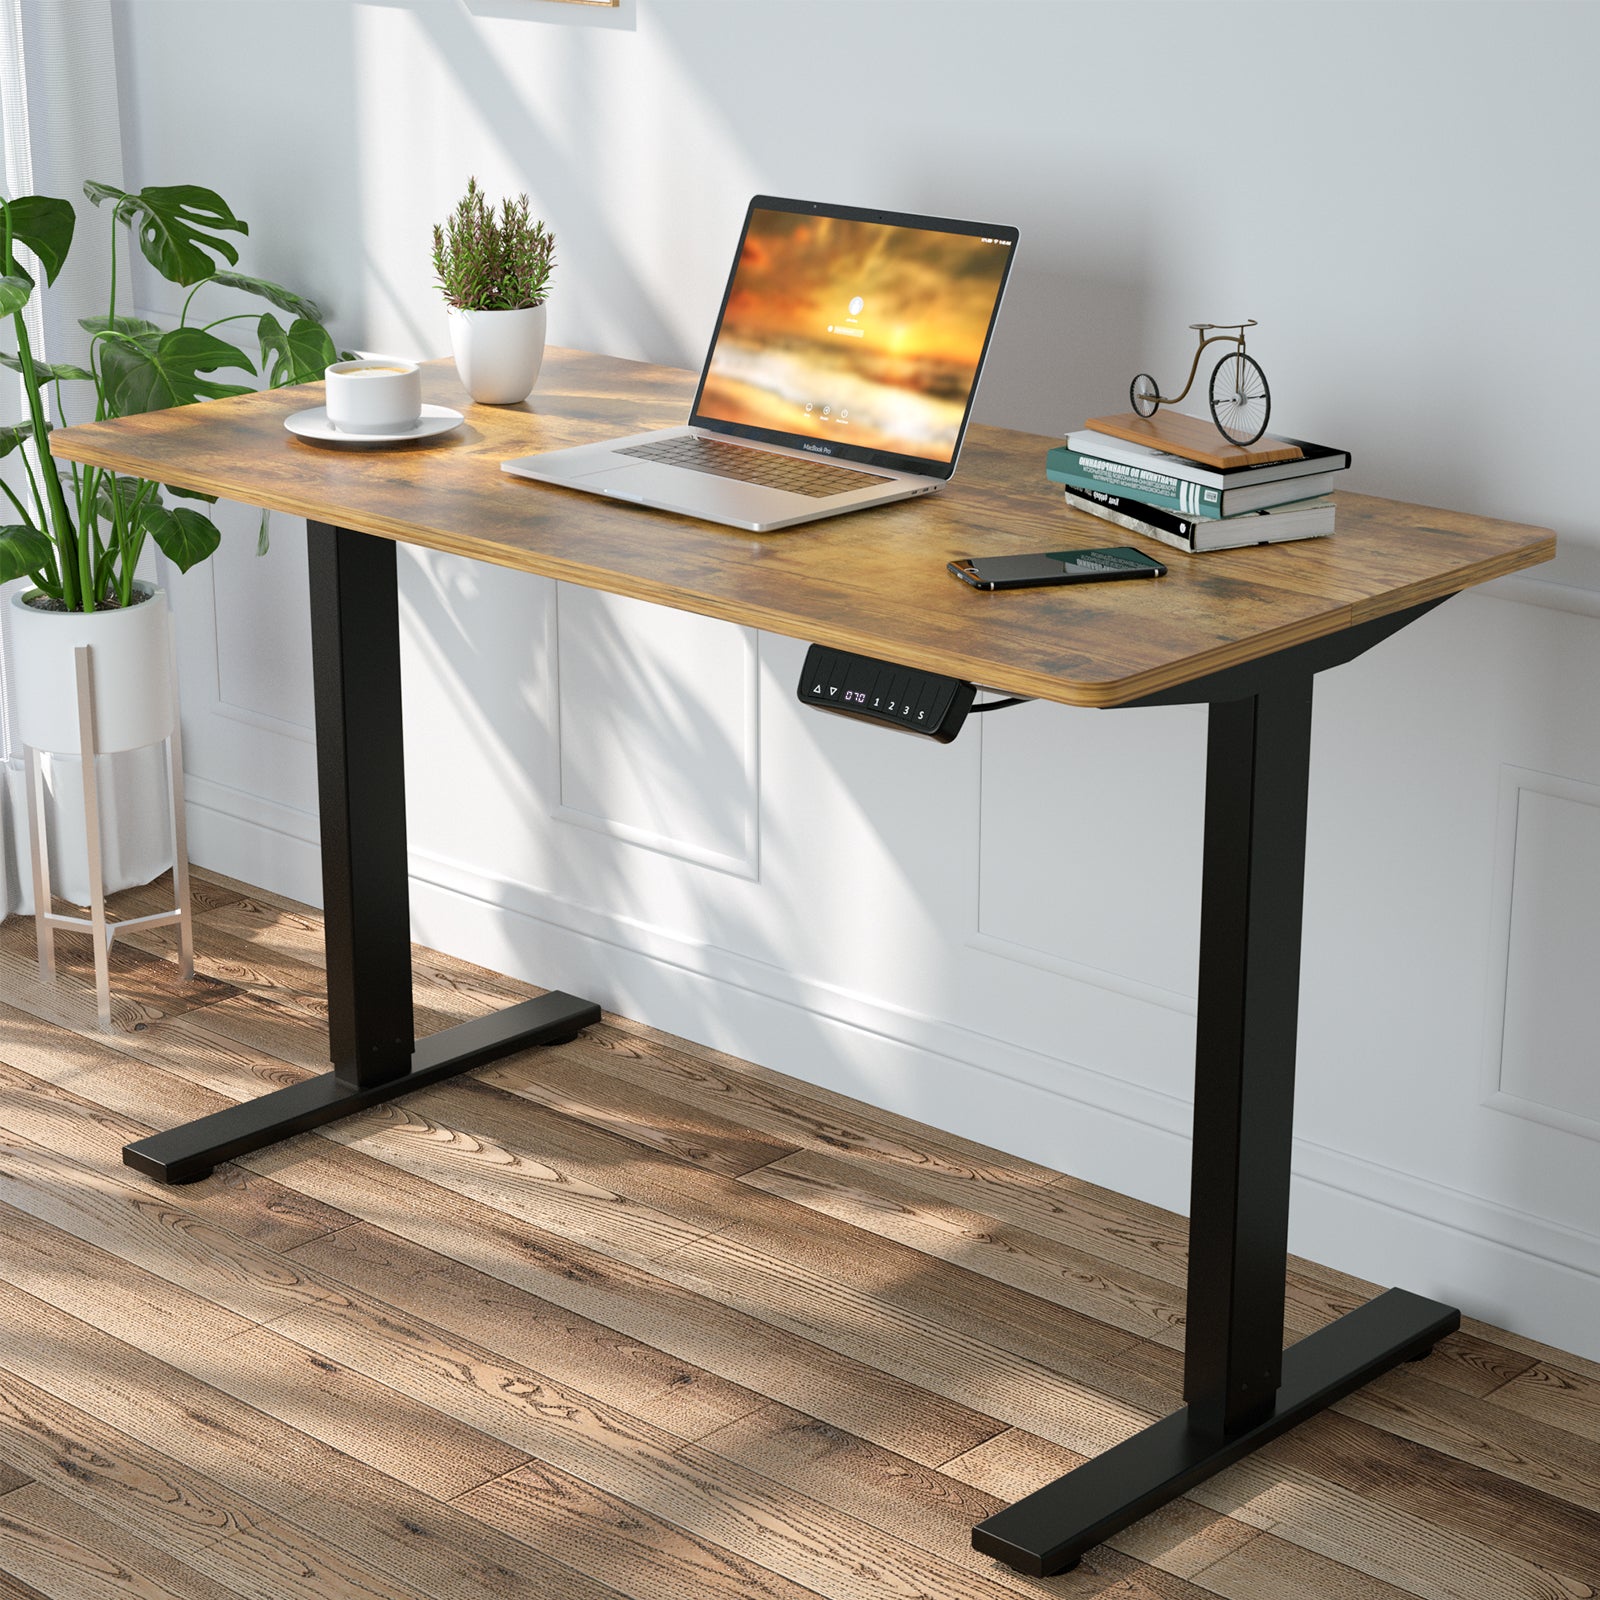 48 x 24 Inch Electric Stand Up Desk Workstation with Desktop 02, Black Electric Standing Desk Adjustable Height Desk 